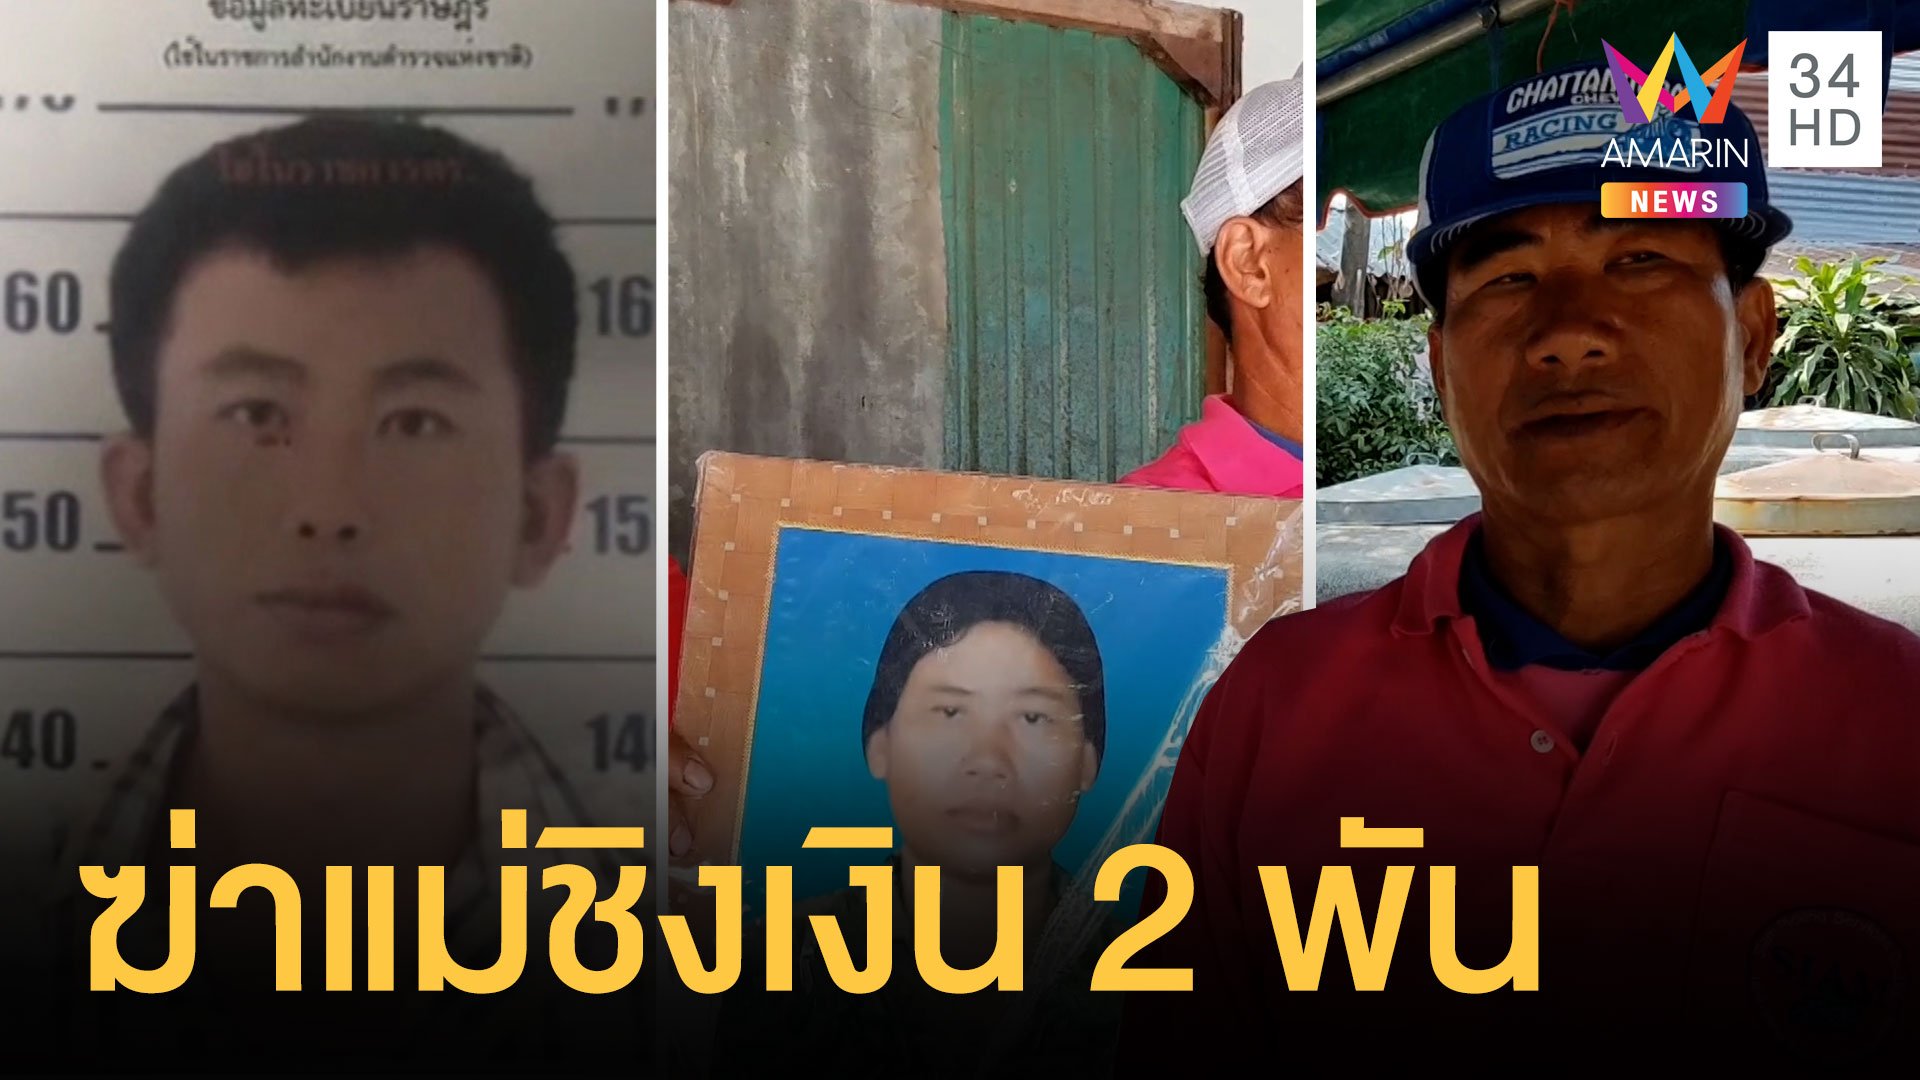 หนุ่มลวงแม่ฆ่าทิ้งป่าชิงเงิน 2 พัน เพิ่งพ้นคุก พี่รับคิดน้องชายฆ่า | ข่าวเที่ยงอมรินทร์ | 31 ม.ค. 64 | AMARIN TVHD34